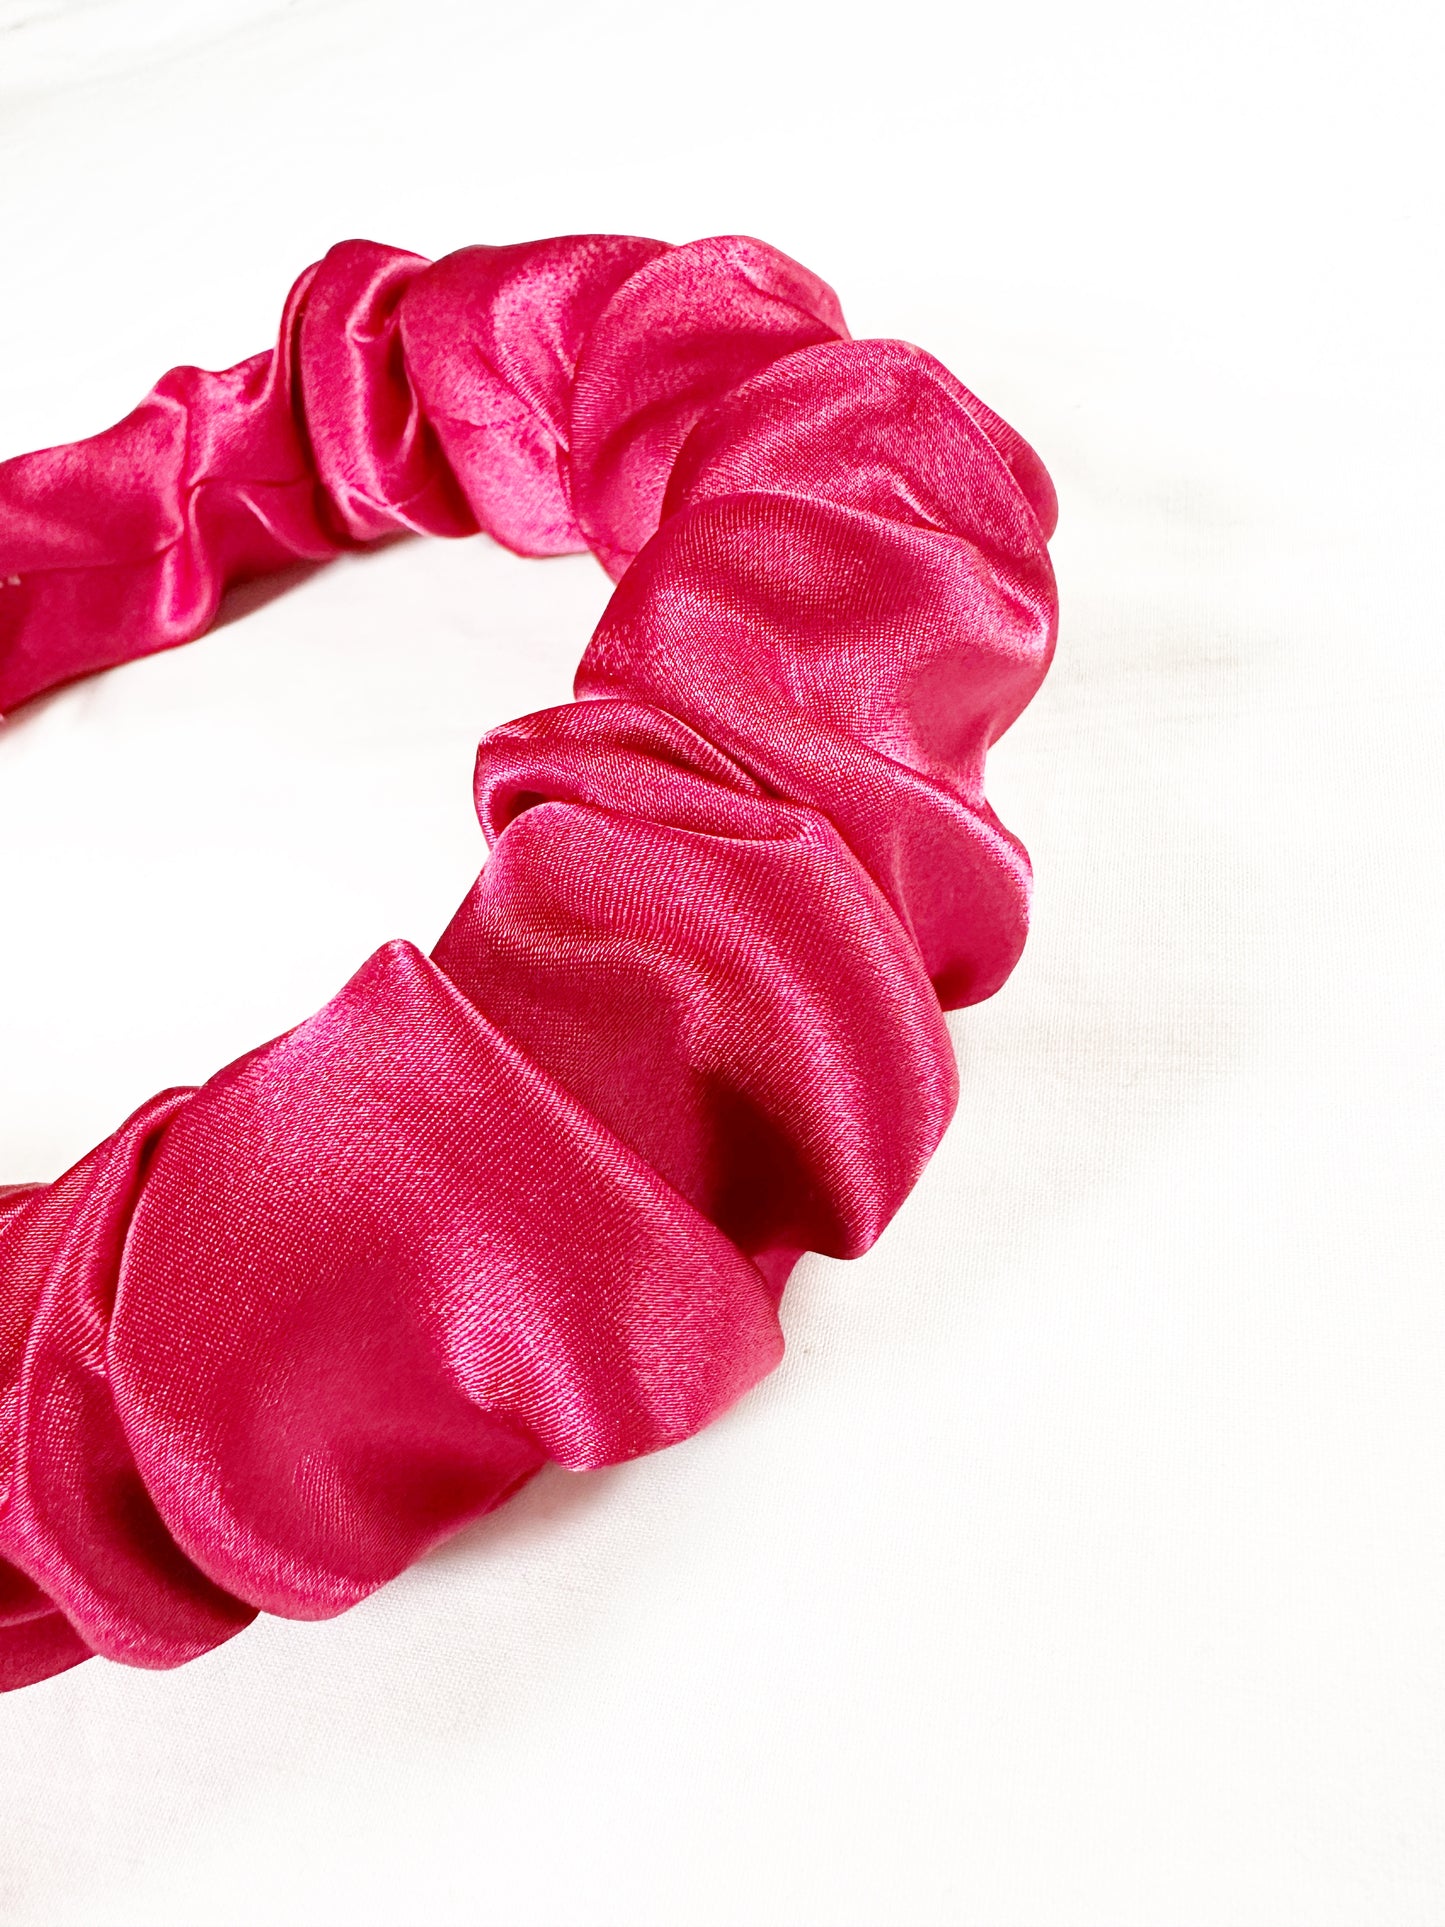 Ruffle Headband in pinky red silk